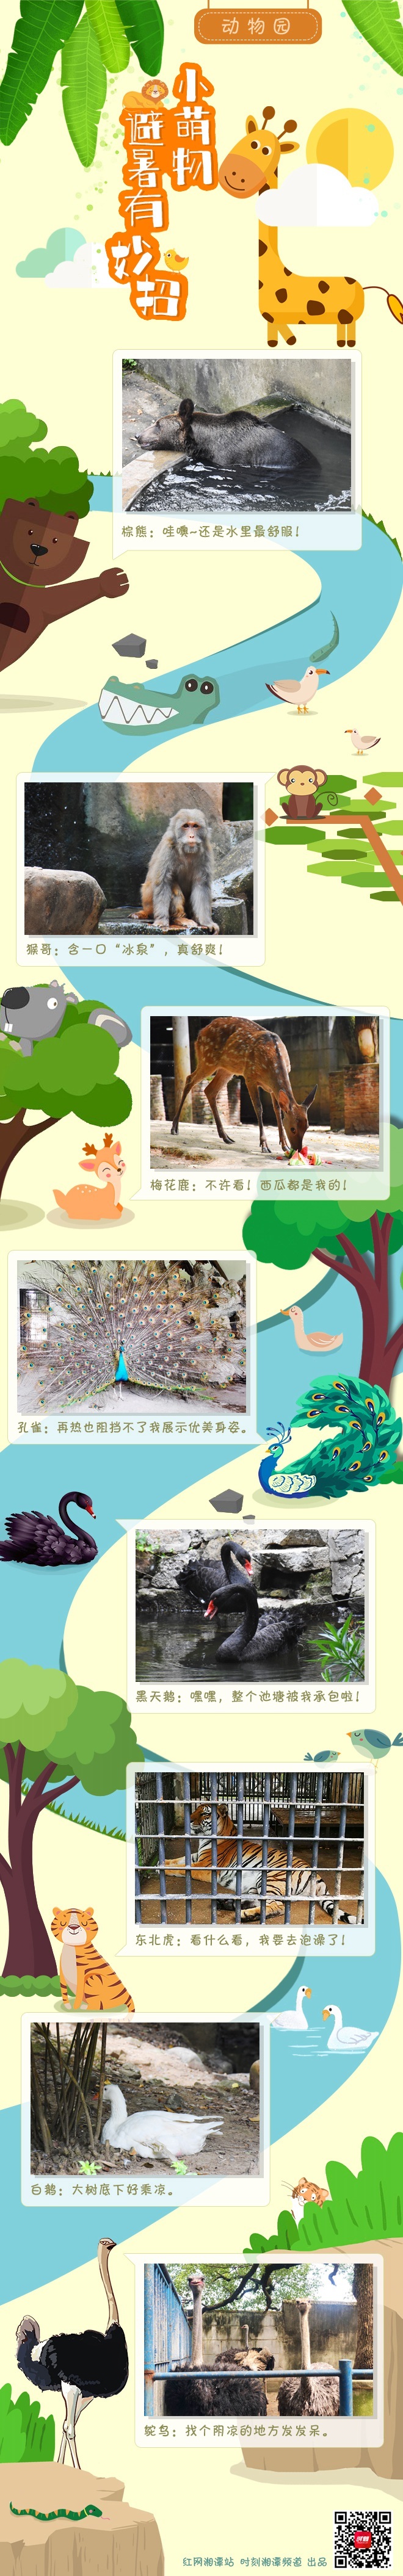 长图丨湘潭动物园里“萌物”们的避暑小妙招